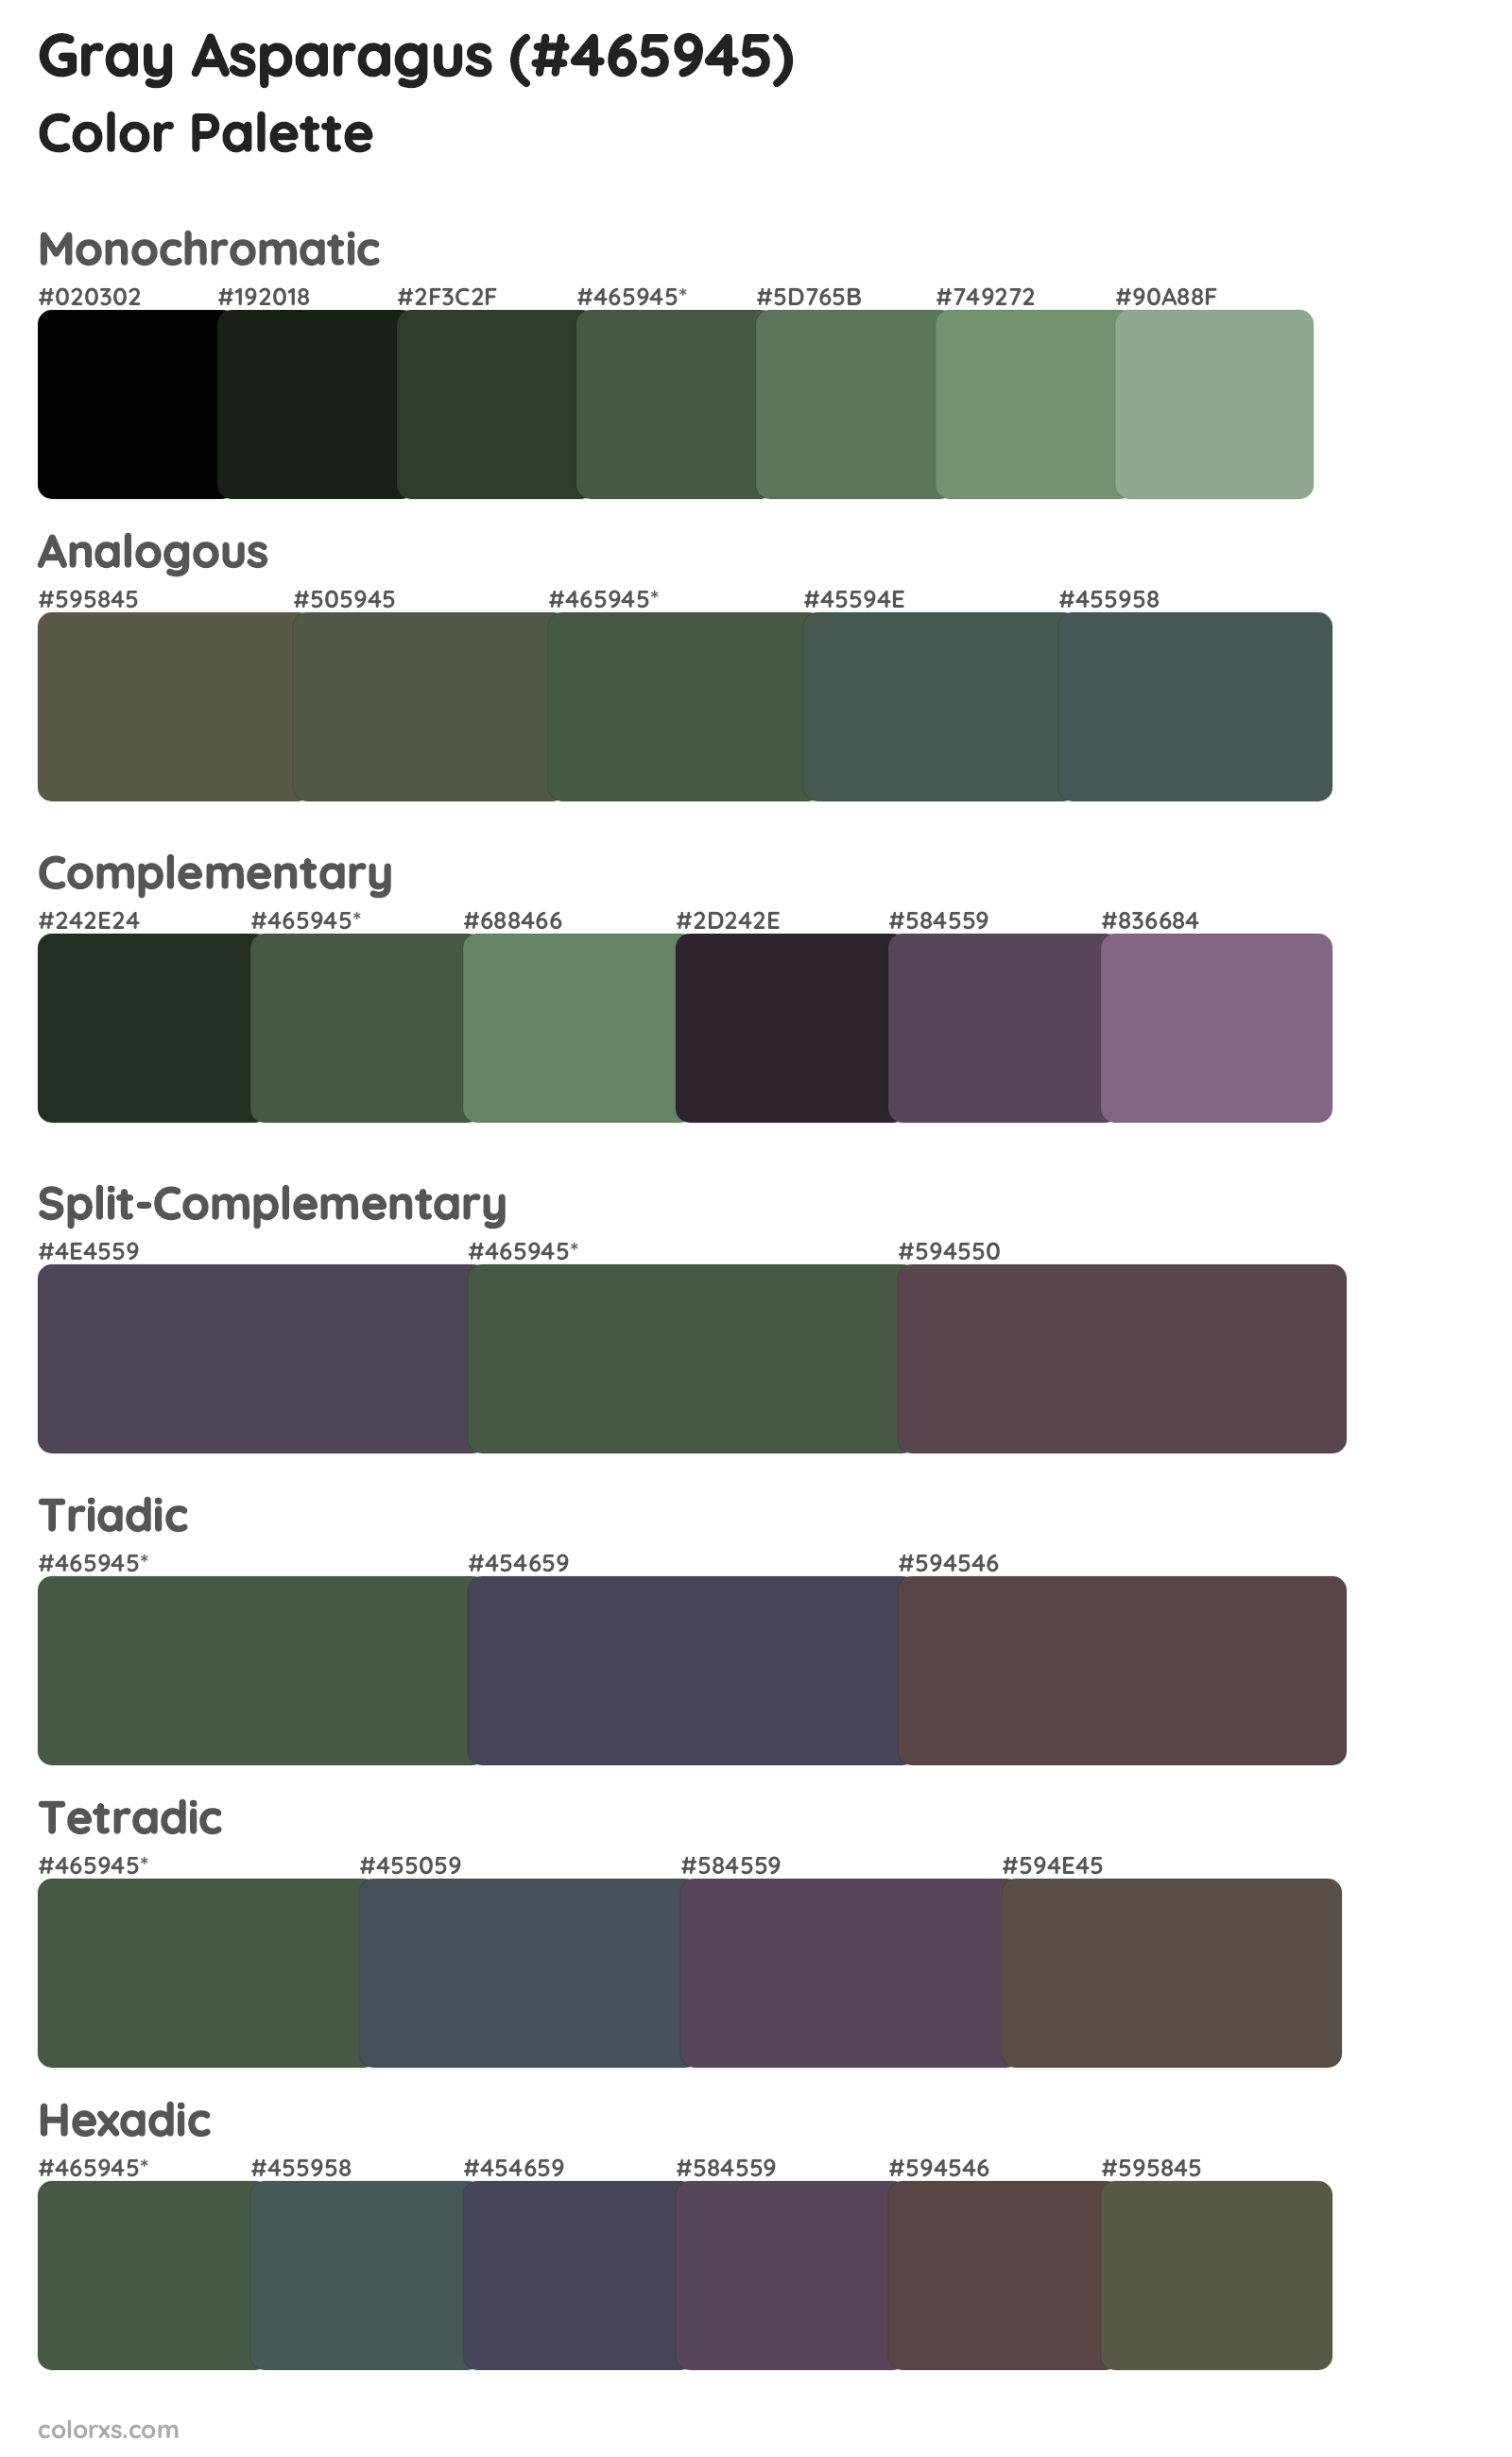 Gray Asparagus Color Scheme Palettes